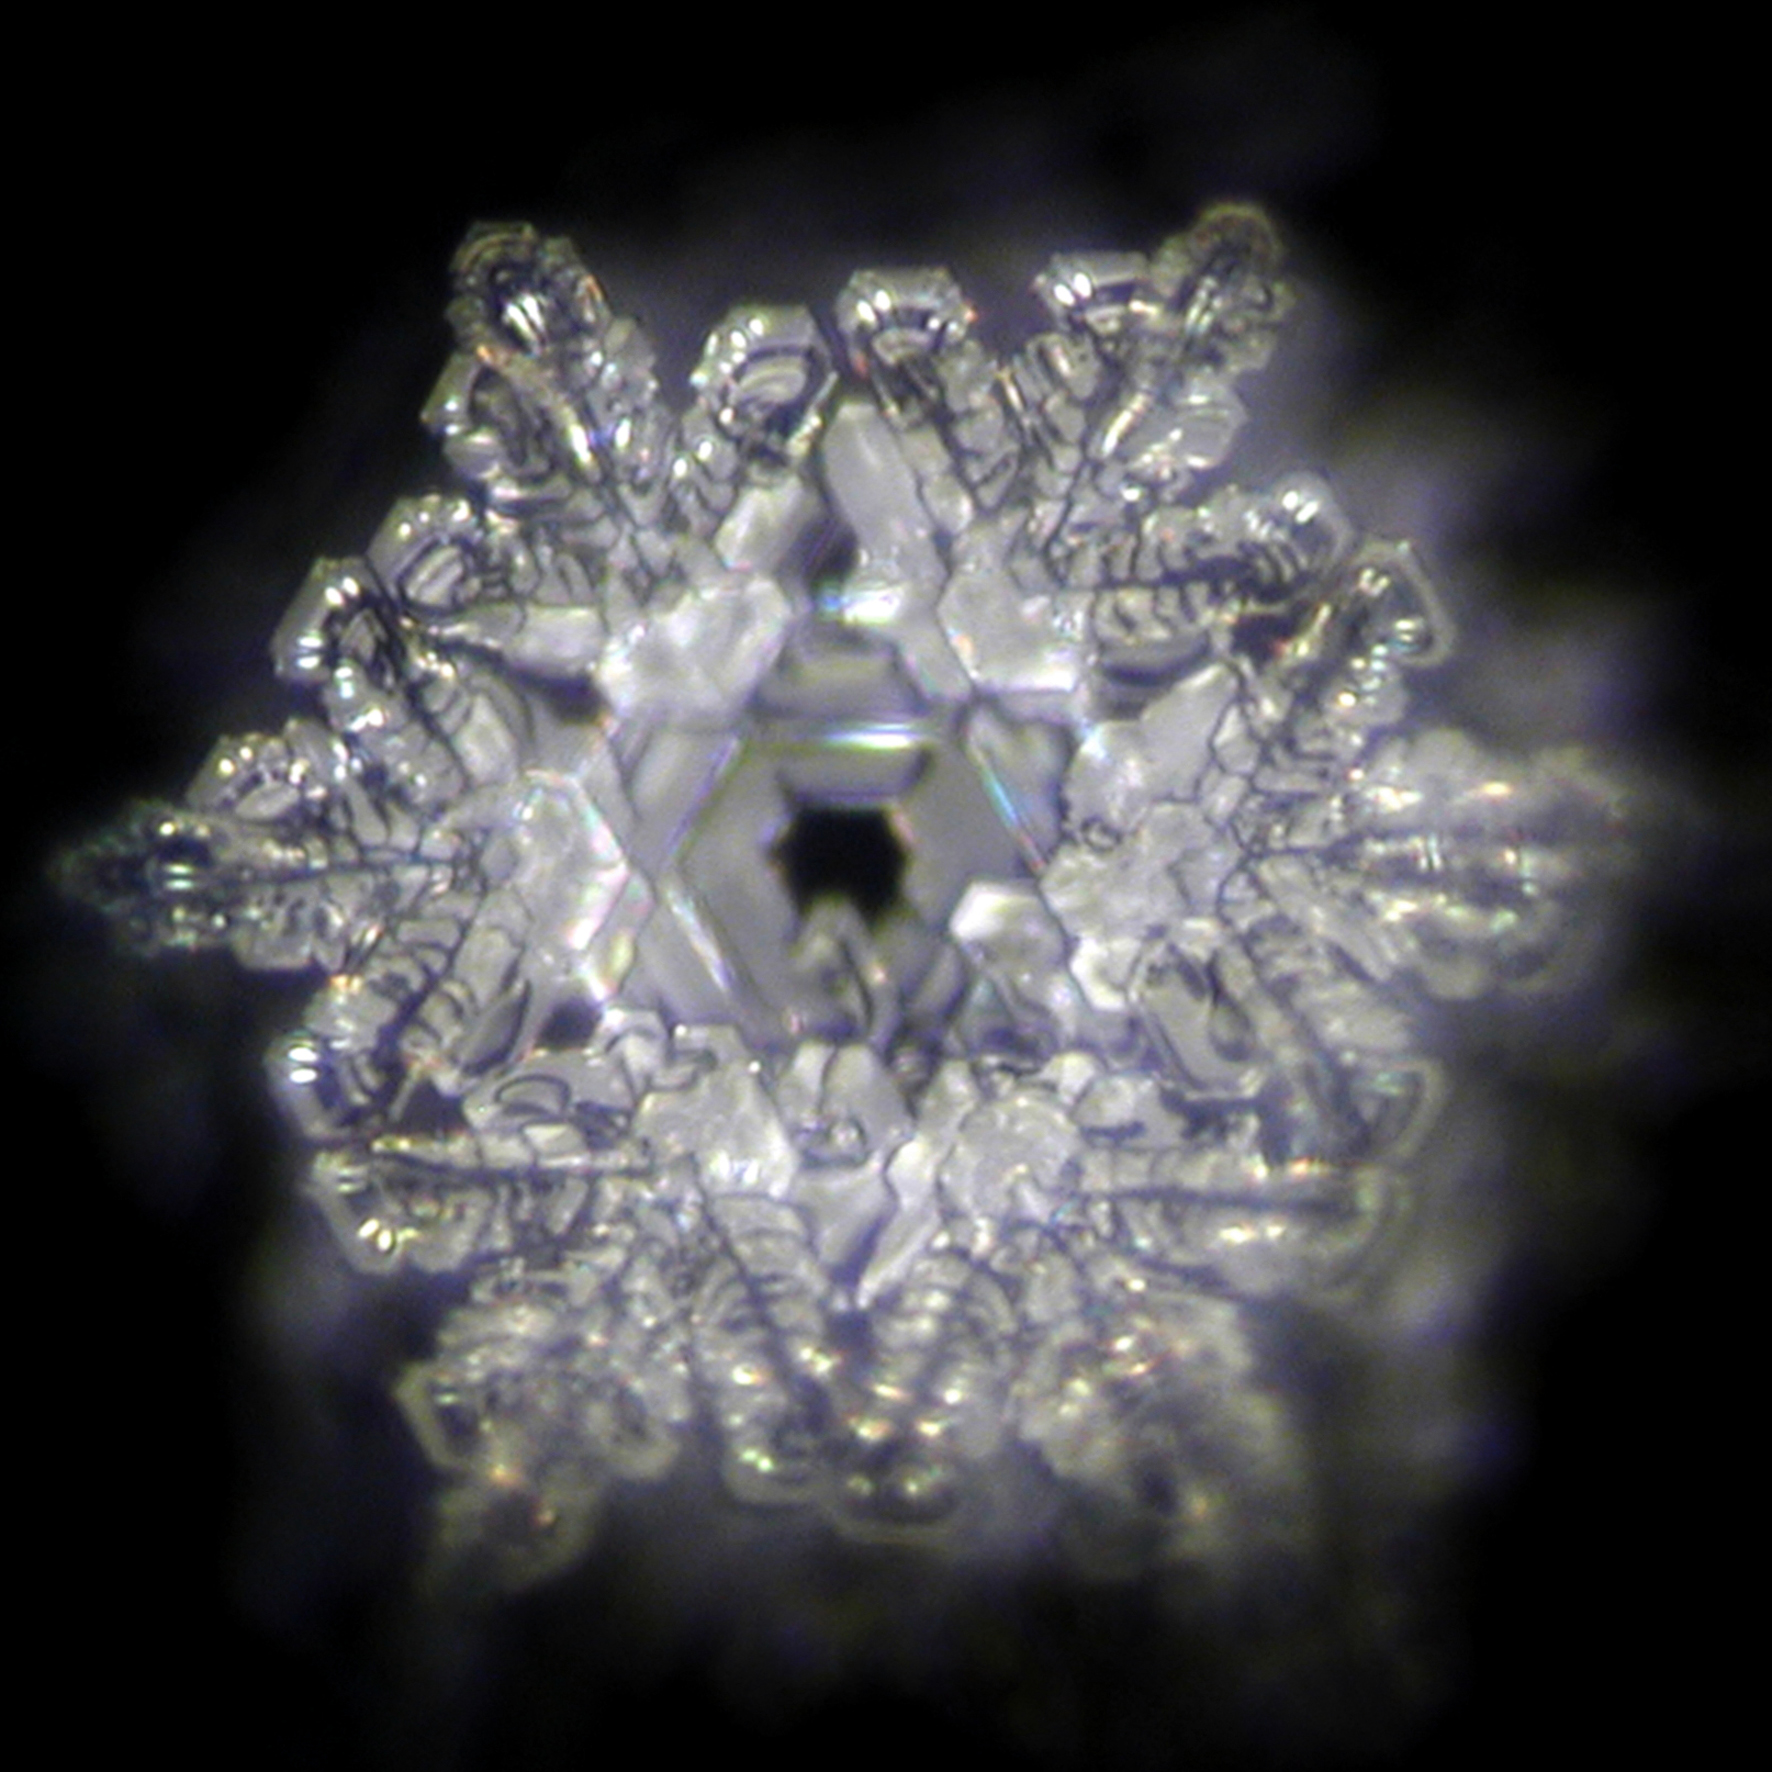 Foto eines Eiskristalls nach dem Emoto-Verfahren von aqua blue behandeltem Wasser. Es zeigt hohe Ordnung um eine hexagonale Basis.